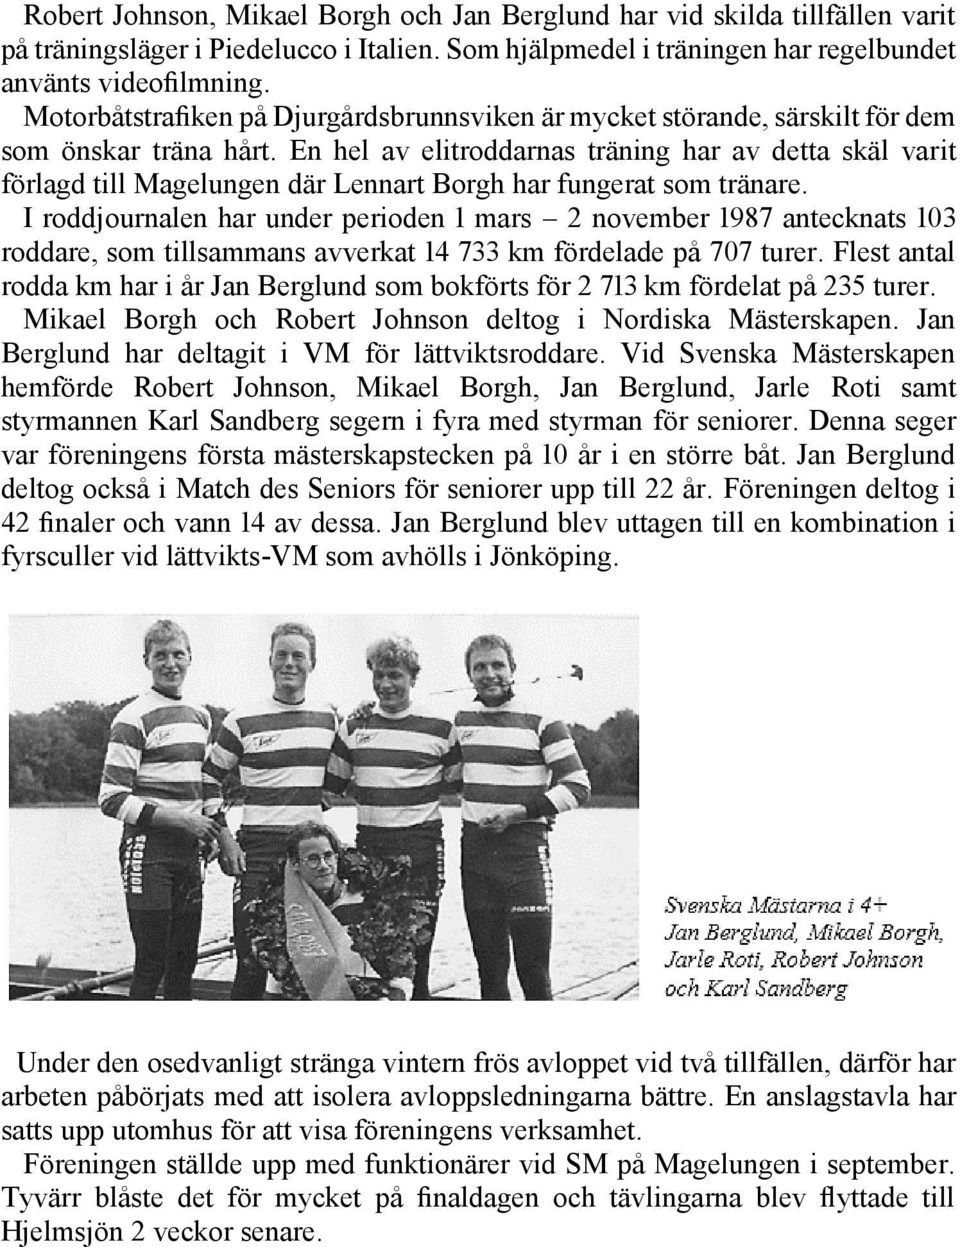 En hel av elitroddarnas träning har av detta skäl varit förlagd till Magelungen där Lennart Borgh har fungerat som tränare.